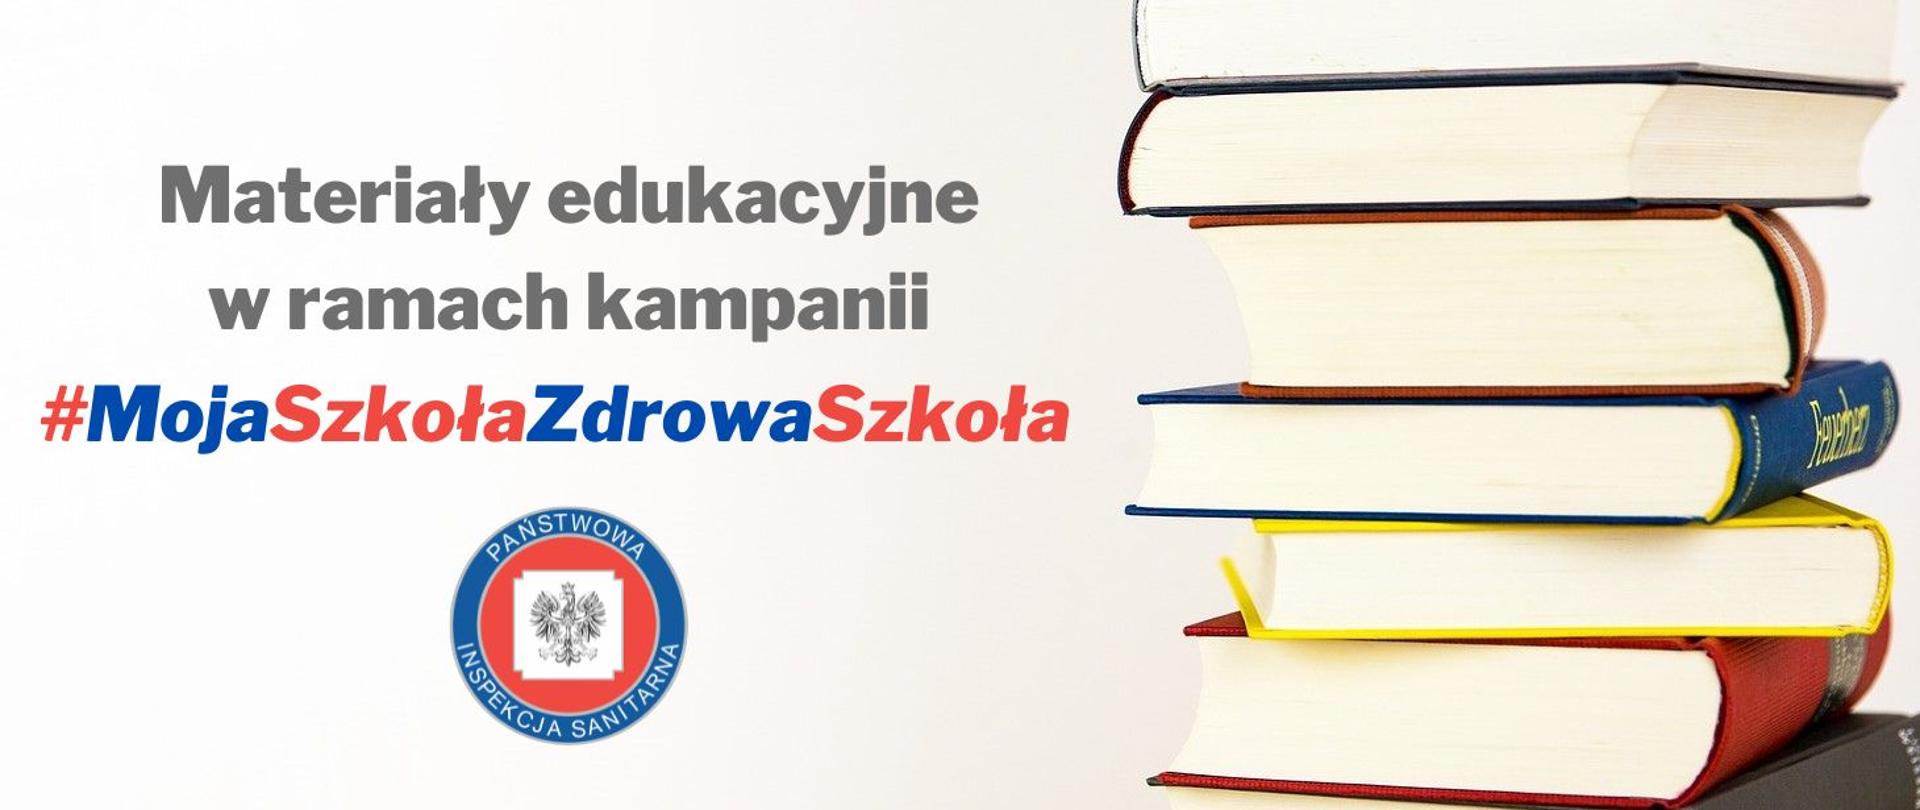 Grafika przedstawia napis „Materiały edukacyjne w ramach kampanii #MojaSzkołaZdrowaSzkoła”. Pod napisem widnieje logo Państwowej Inspekcji Sanitarnej a po prawej grafika przedstawia stos książek.